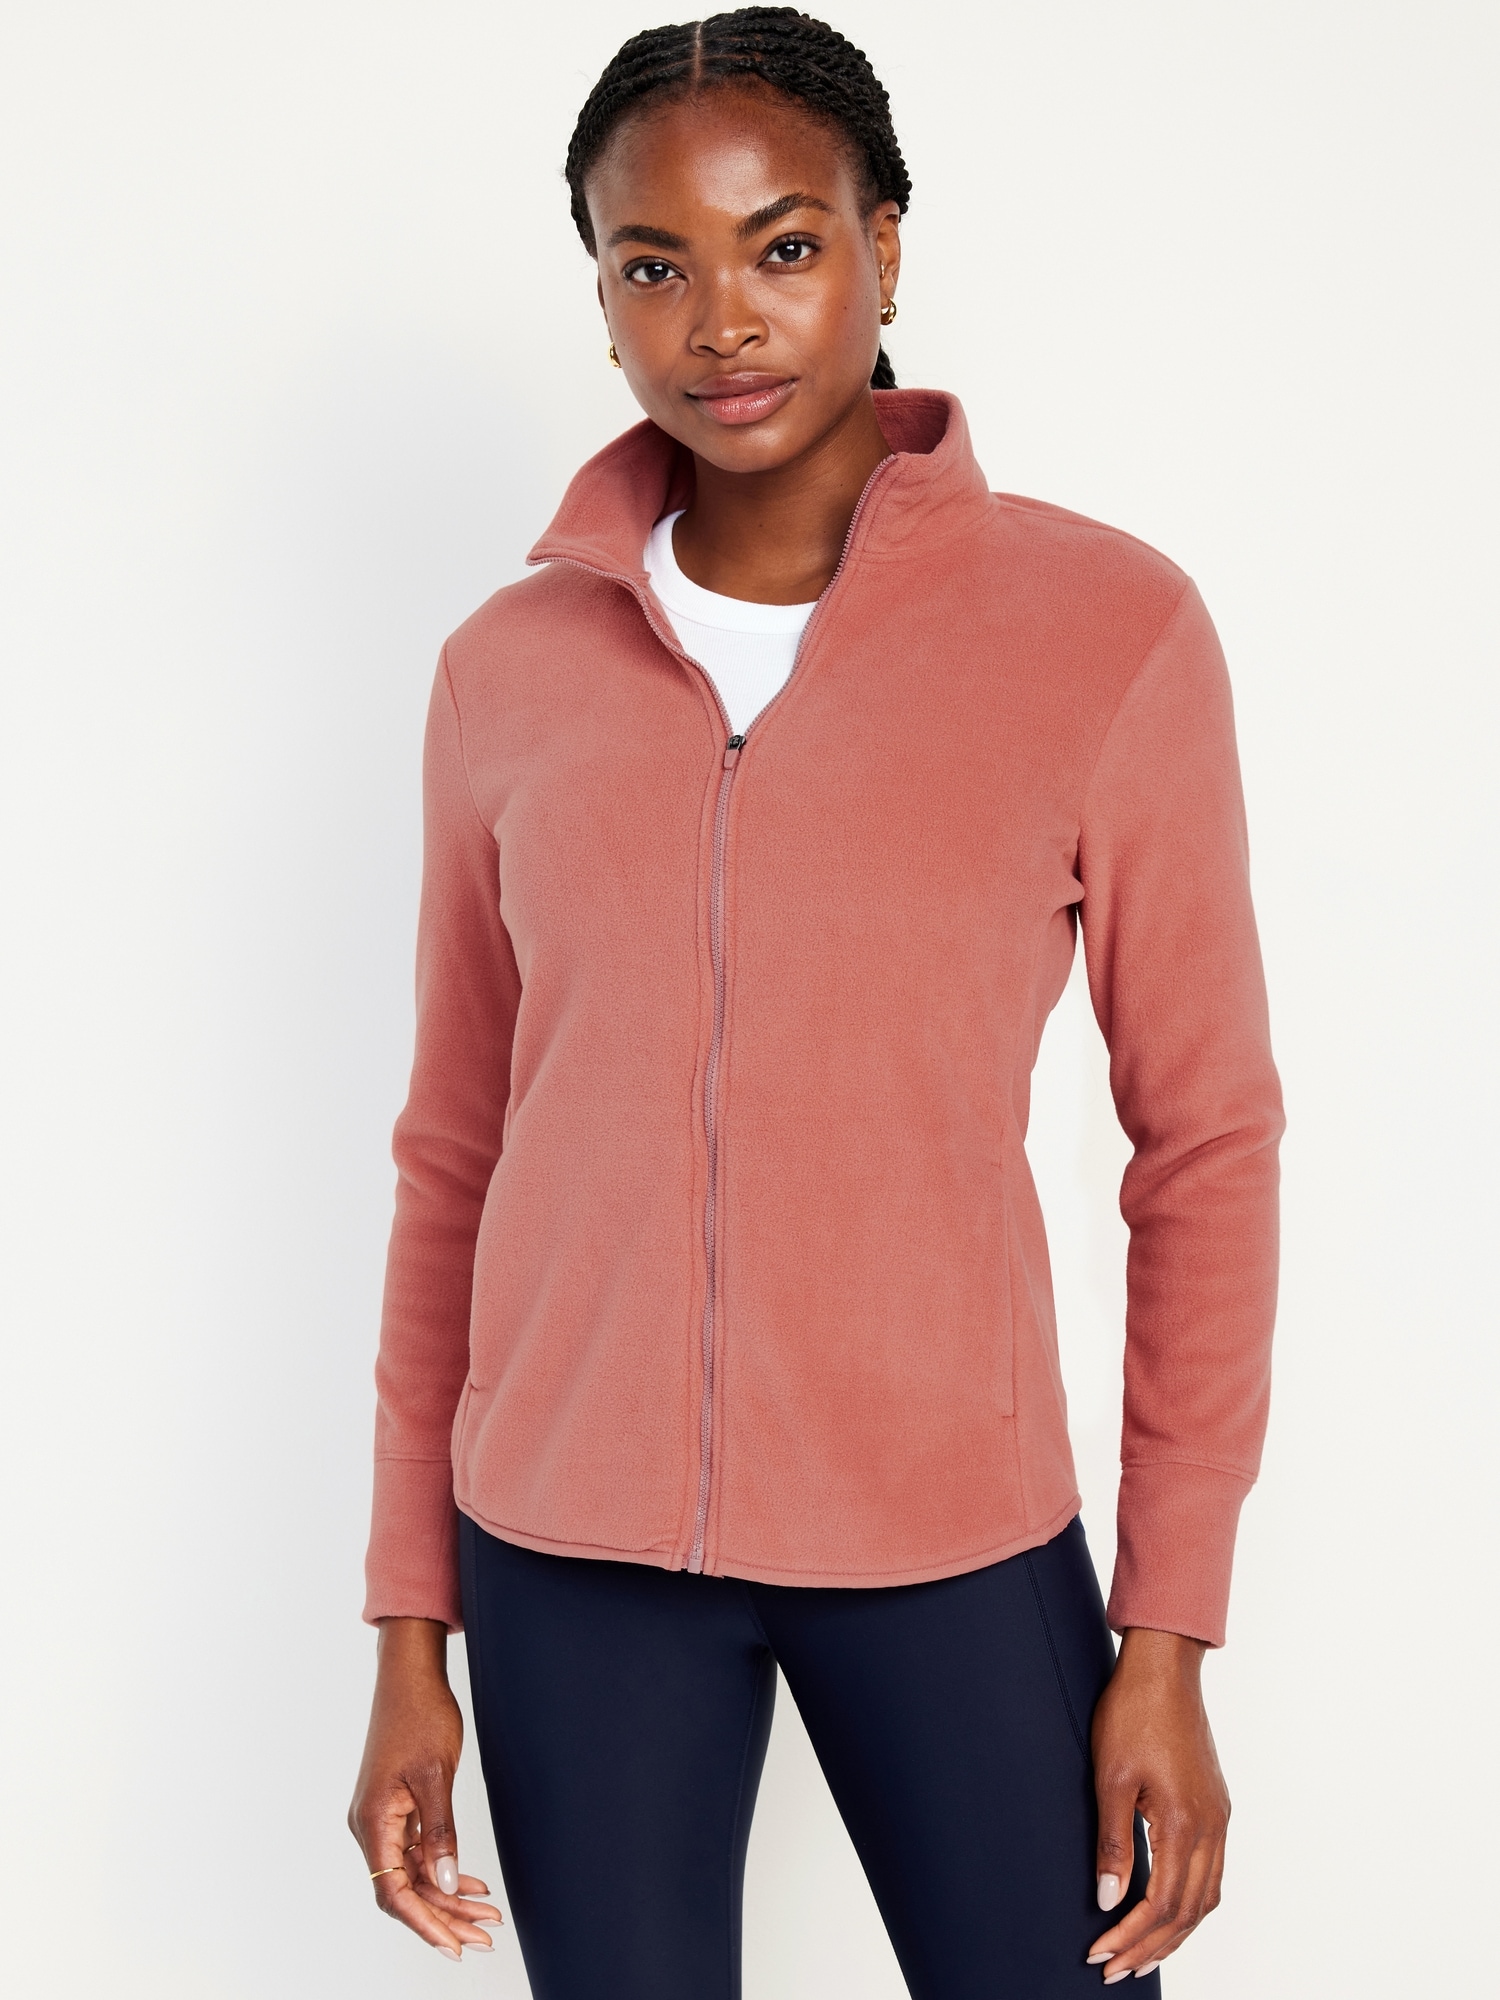 Women's Fleeces, Fleece Jackets, Zip Ups & Hoodies